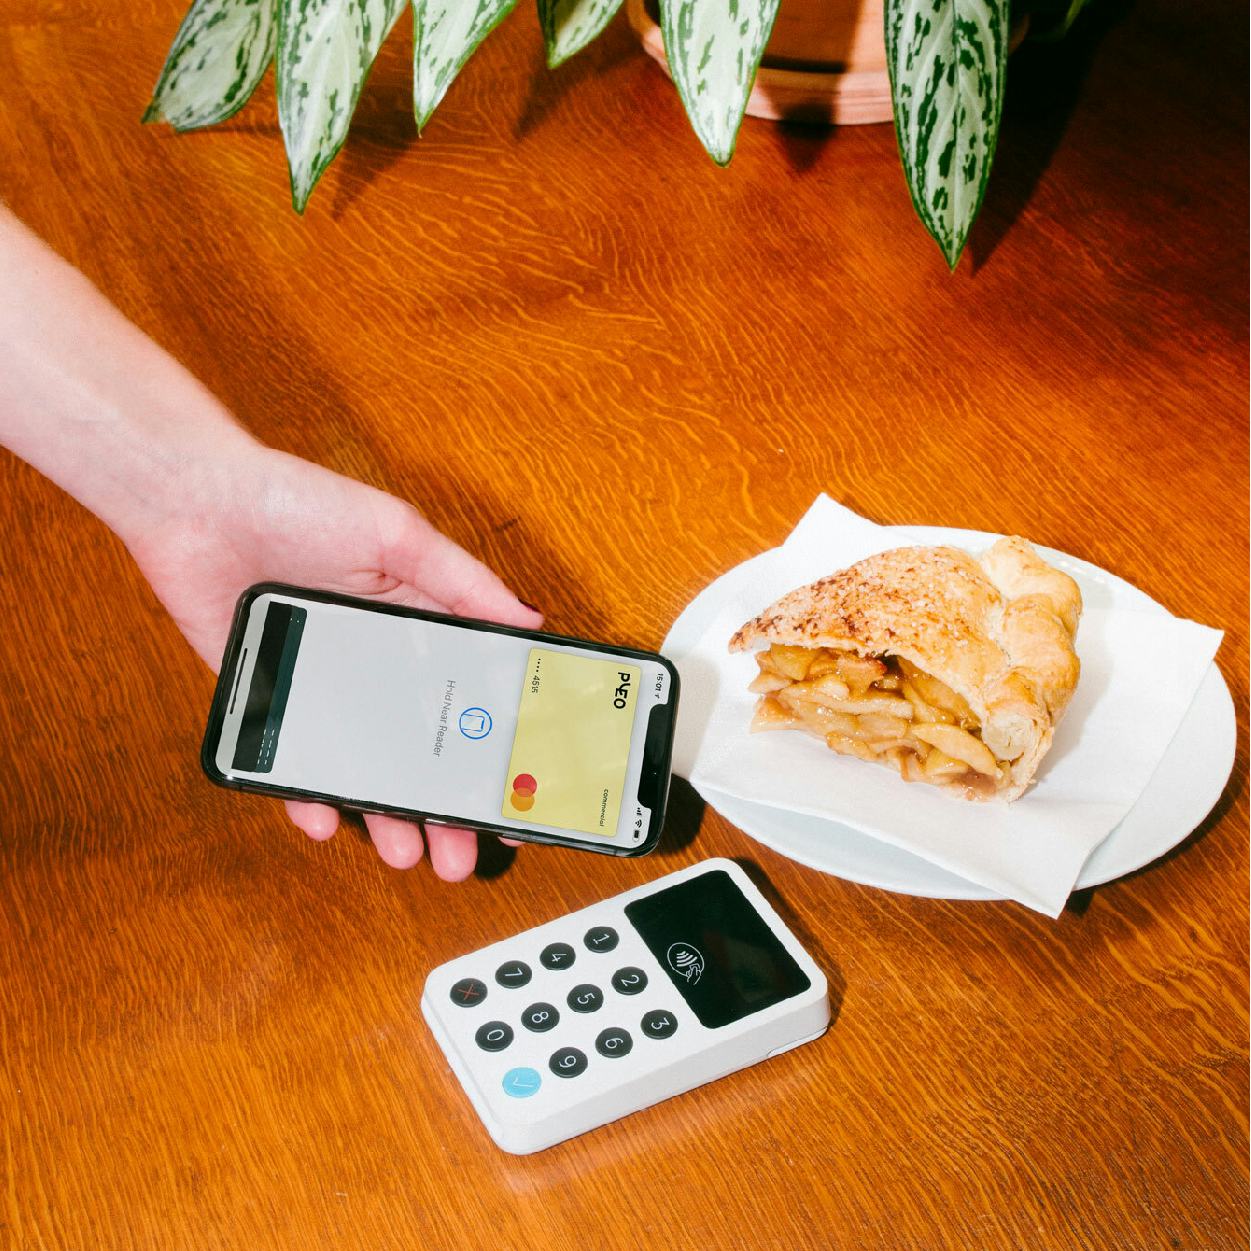 Pleos virtuelle firmakort anvendes til at betale for frokost